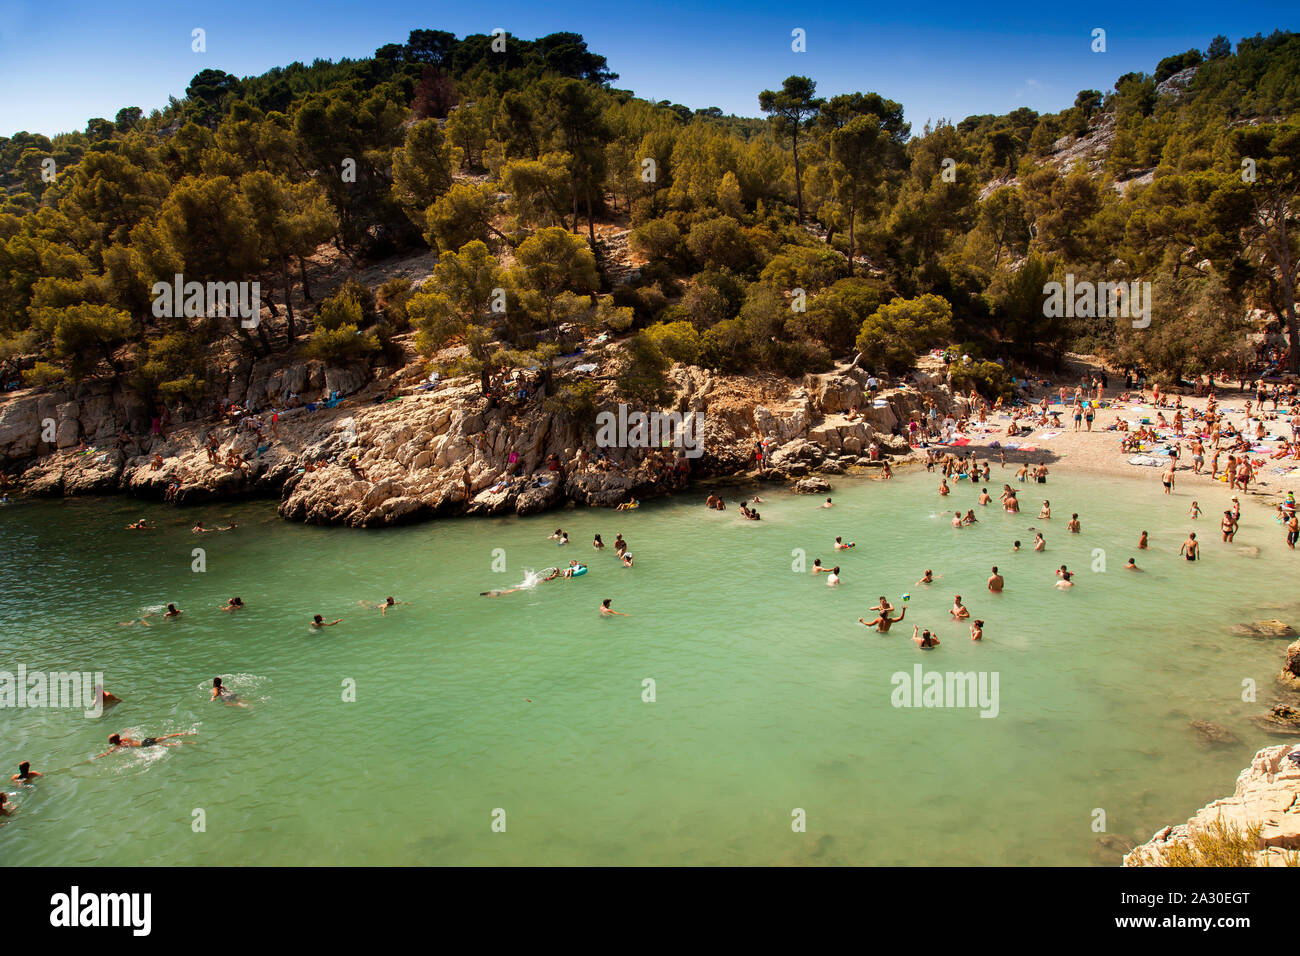 Badeurlauber am Strand in der Bucht Calanque de Port-Pin, Nationalpark Calanques, Cassis, Département Bouches-du-Rhône, Provence-Alpes-Côte d’Azur, Fr Stock Photo